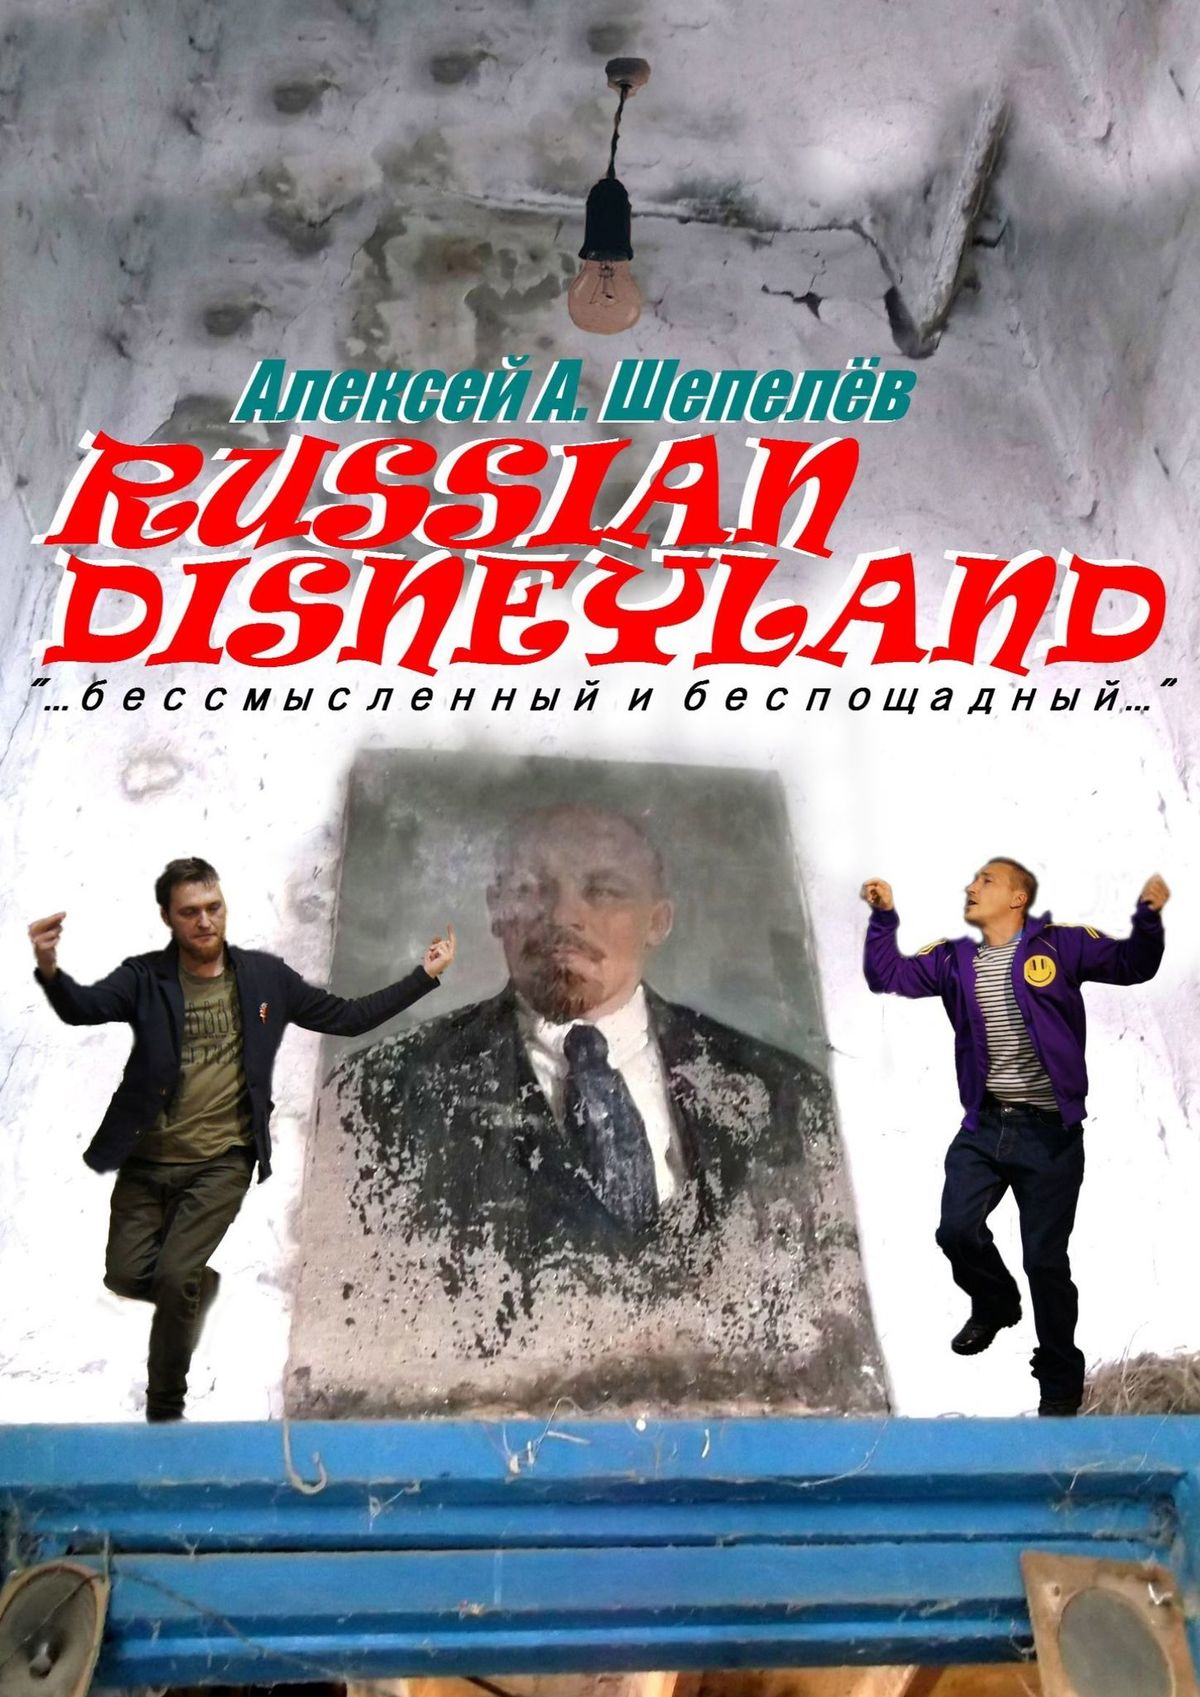 Russian Disneyland.Повесть